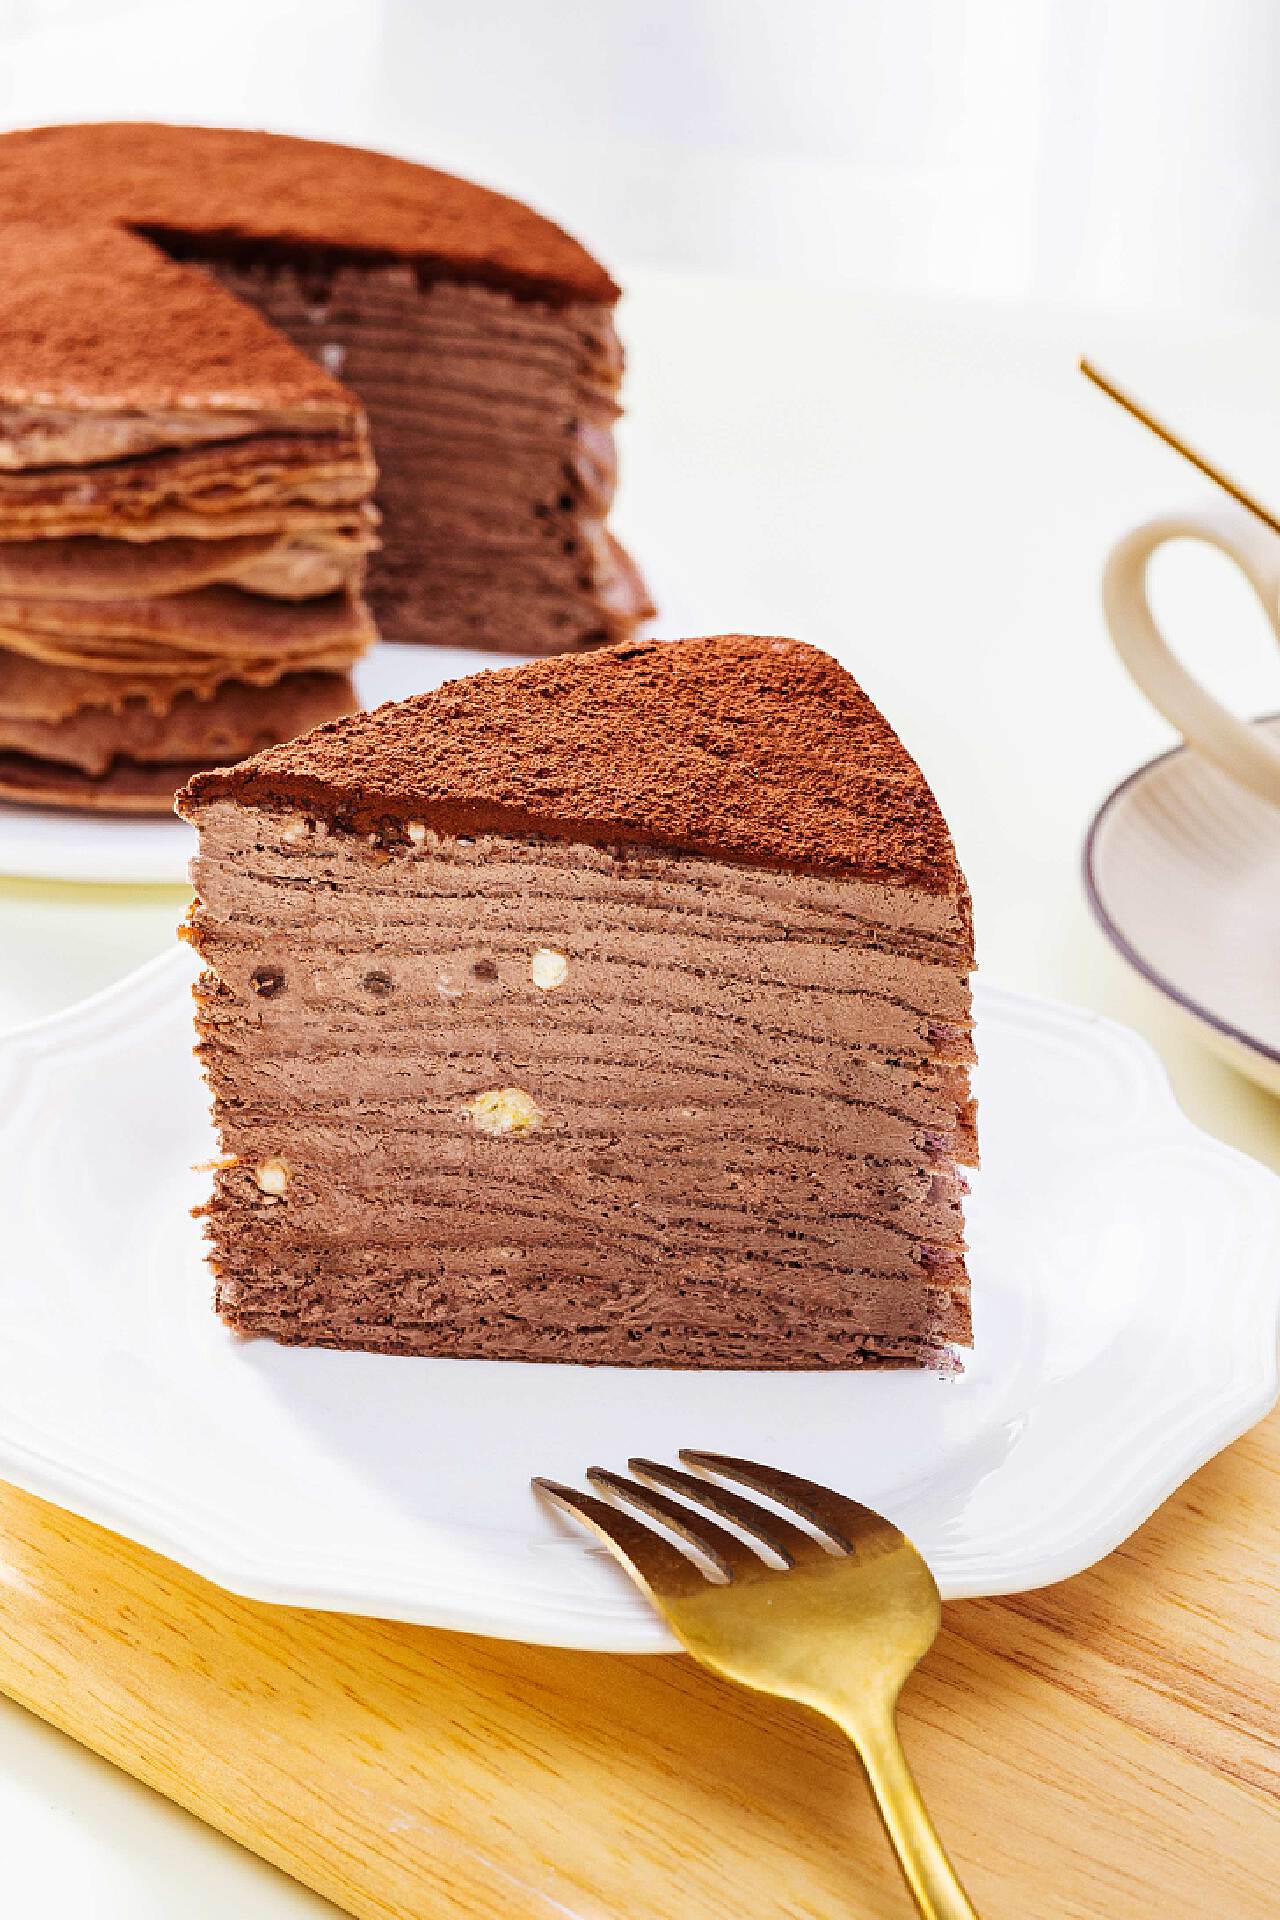 巧克力千层蛋糕,巧克力千层蛋糕的家常做法 - 美食杰巧克力千层蛋糕做法大全